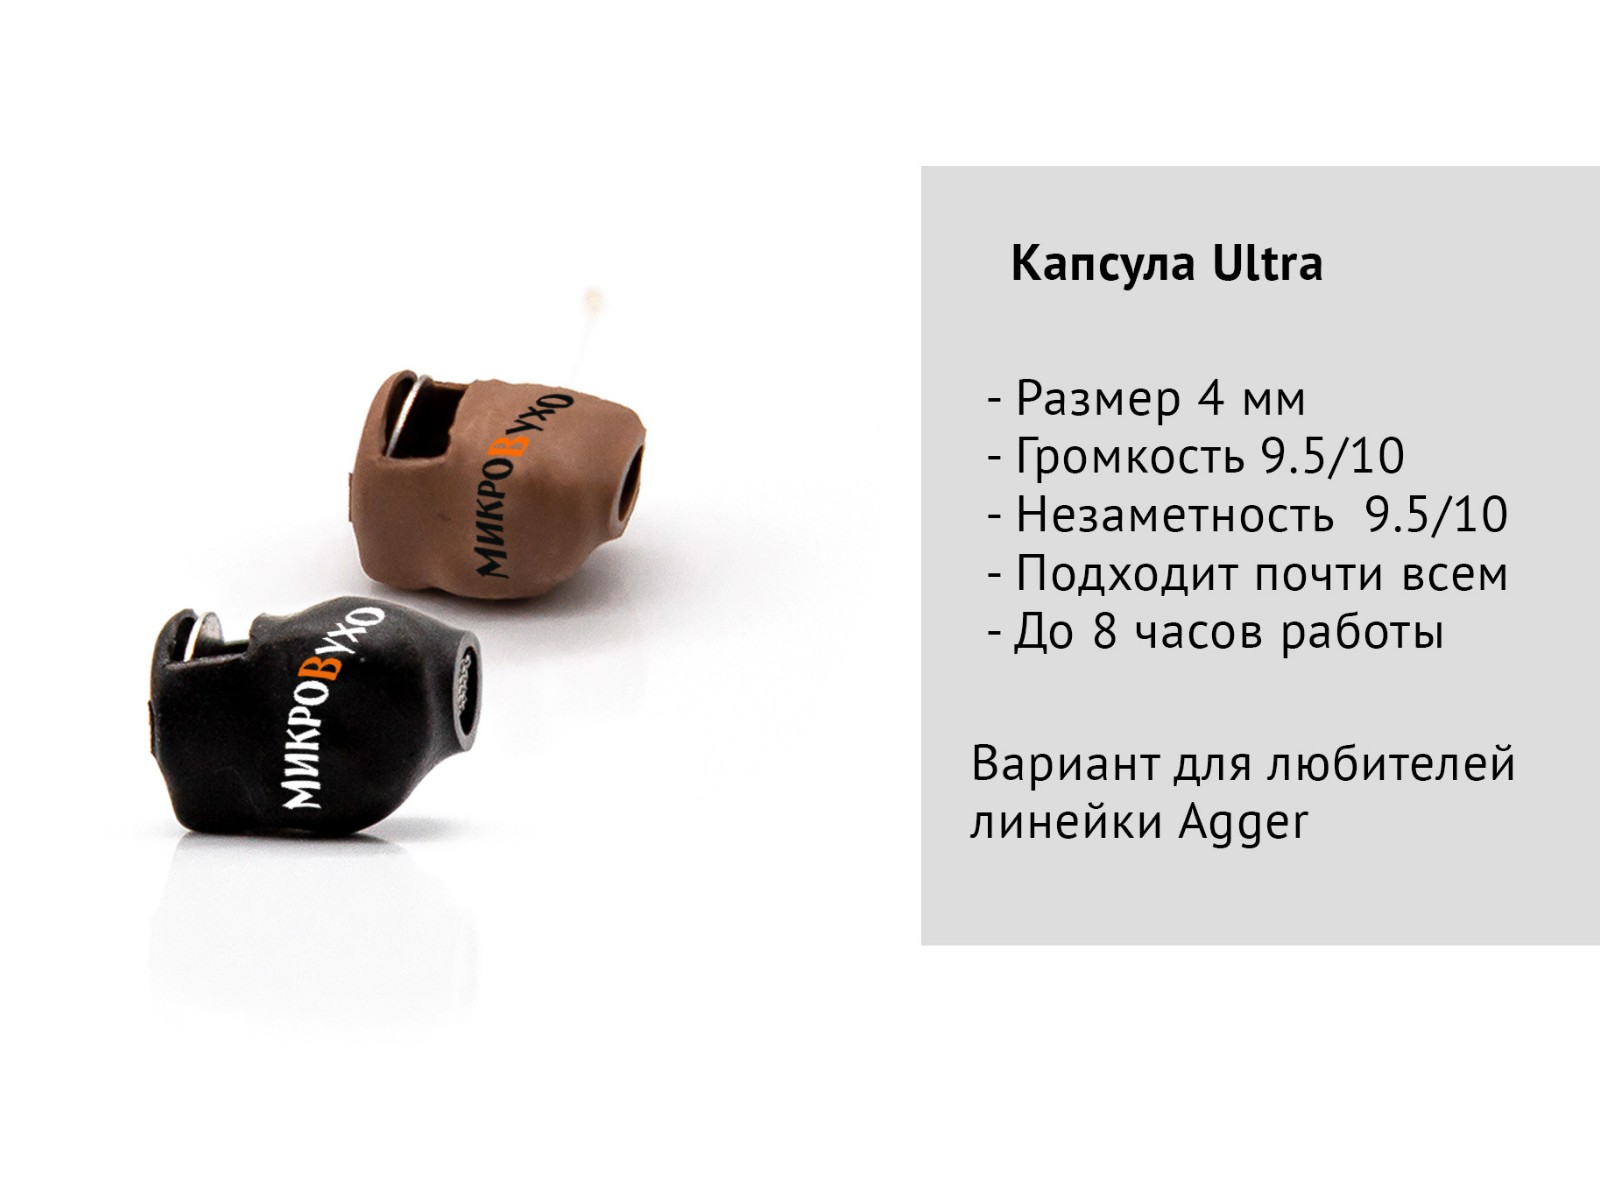 Универсальная гарнитура Bluetooth Pro с капсулой Nano 4 мм и магнитами 2 мм 8